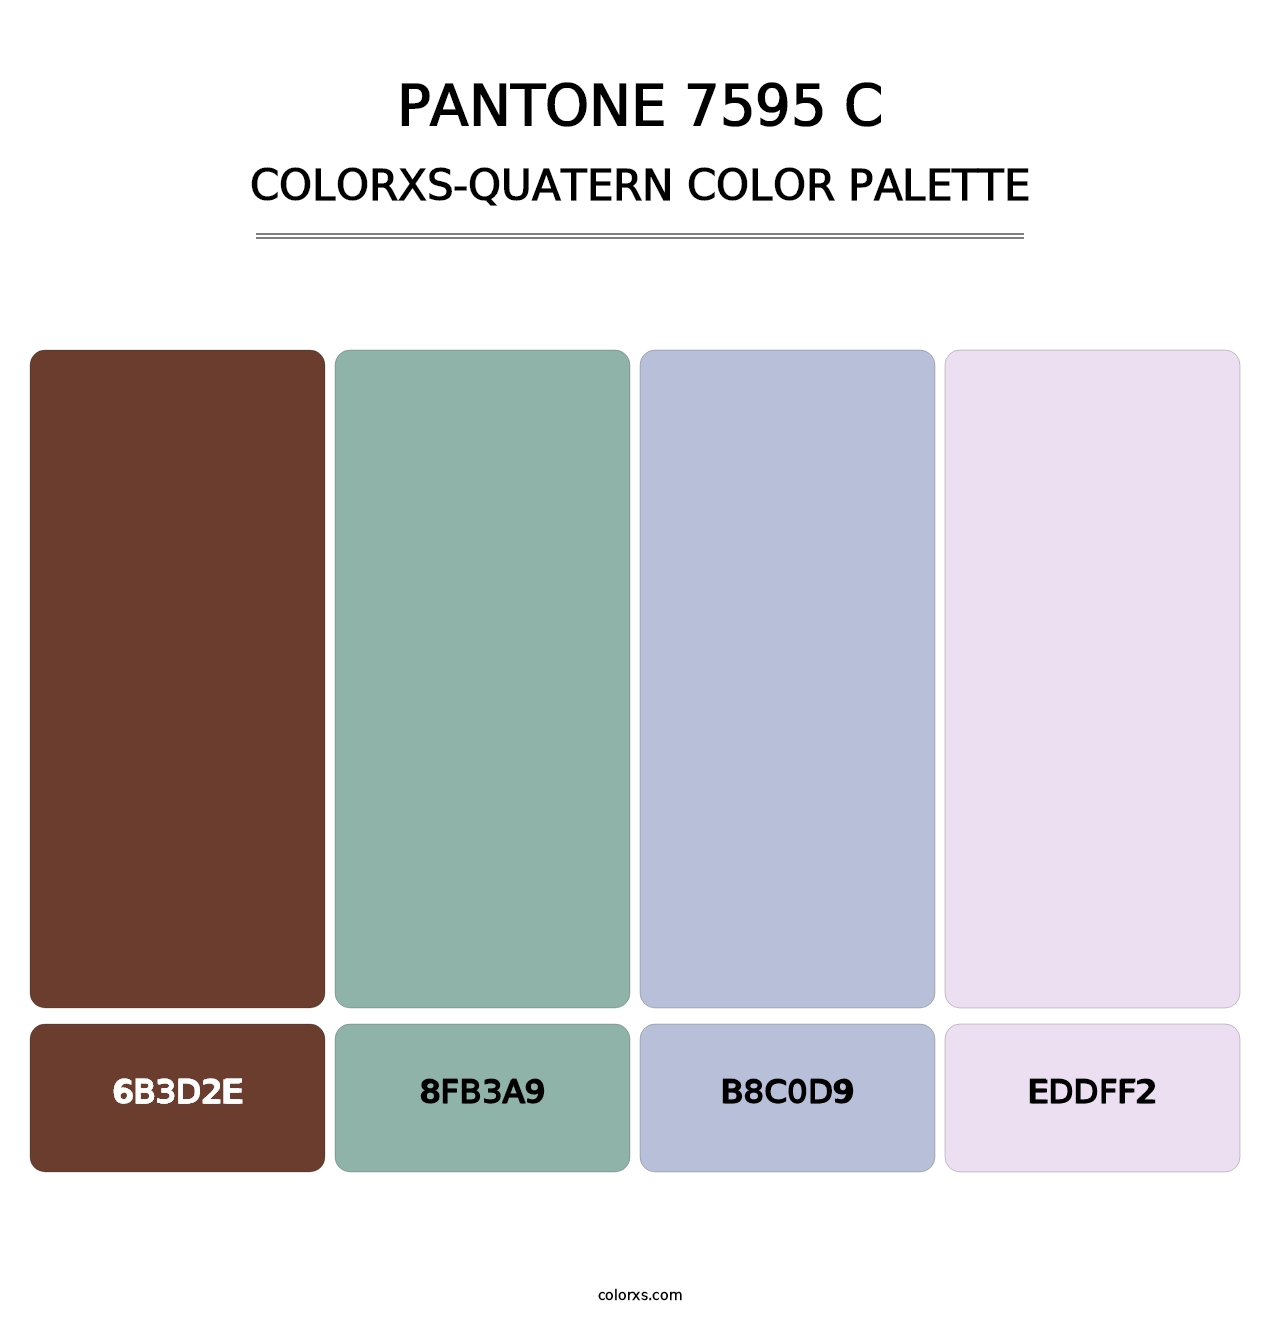 PANTONE 7595 C - Colorxs Quatern Palette